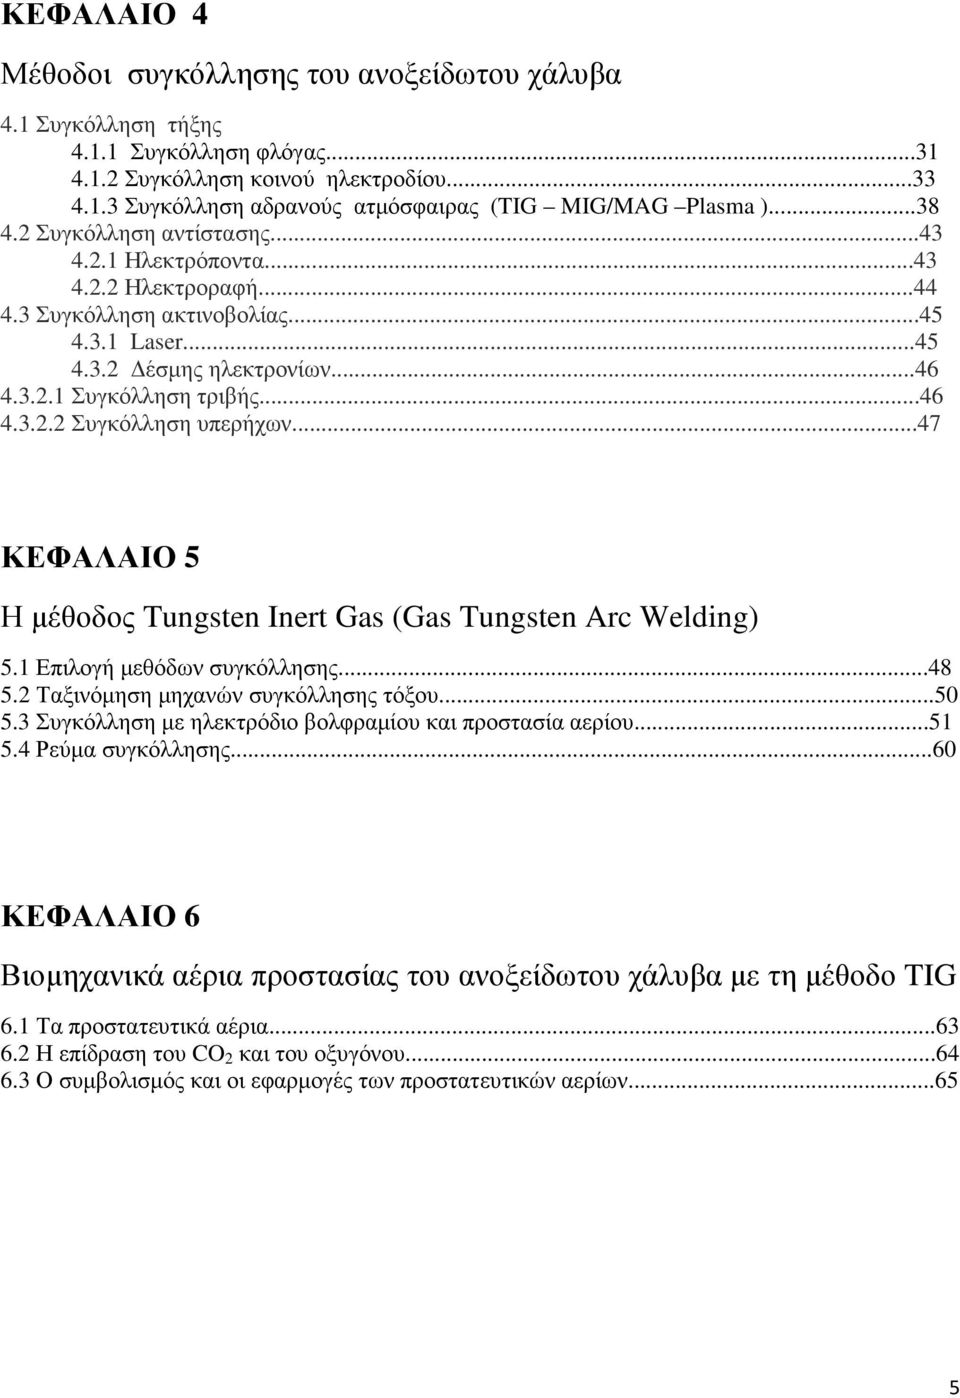 ..47 ΚΕΦΑΛΑΙΟ 5 Η µέθοδος Tungsten Inert Gas (Gas Tungsten Arc Welding) 5.1 Επιλογή µεθόδων συγκόλλησης...48 5.2 Ταξινόµηση µηχανών συγκόλλησης τόξου...50 5.